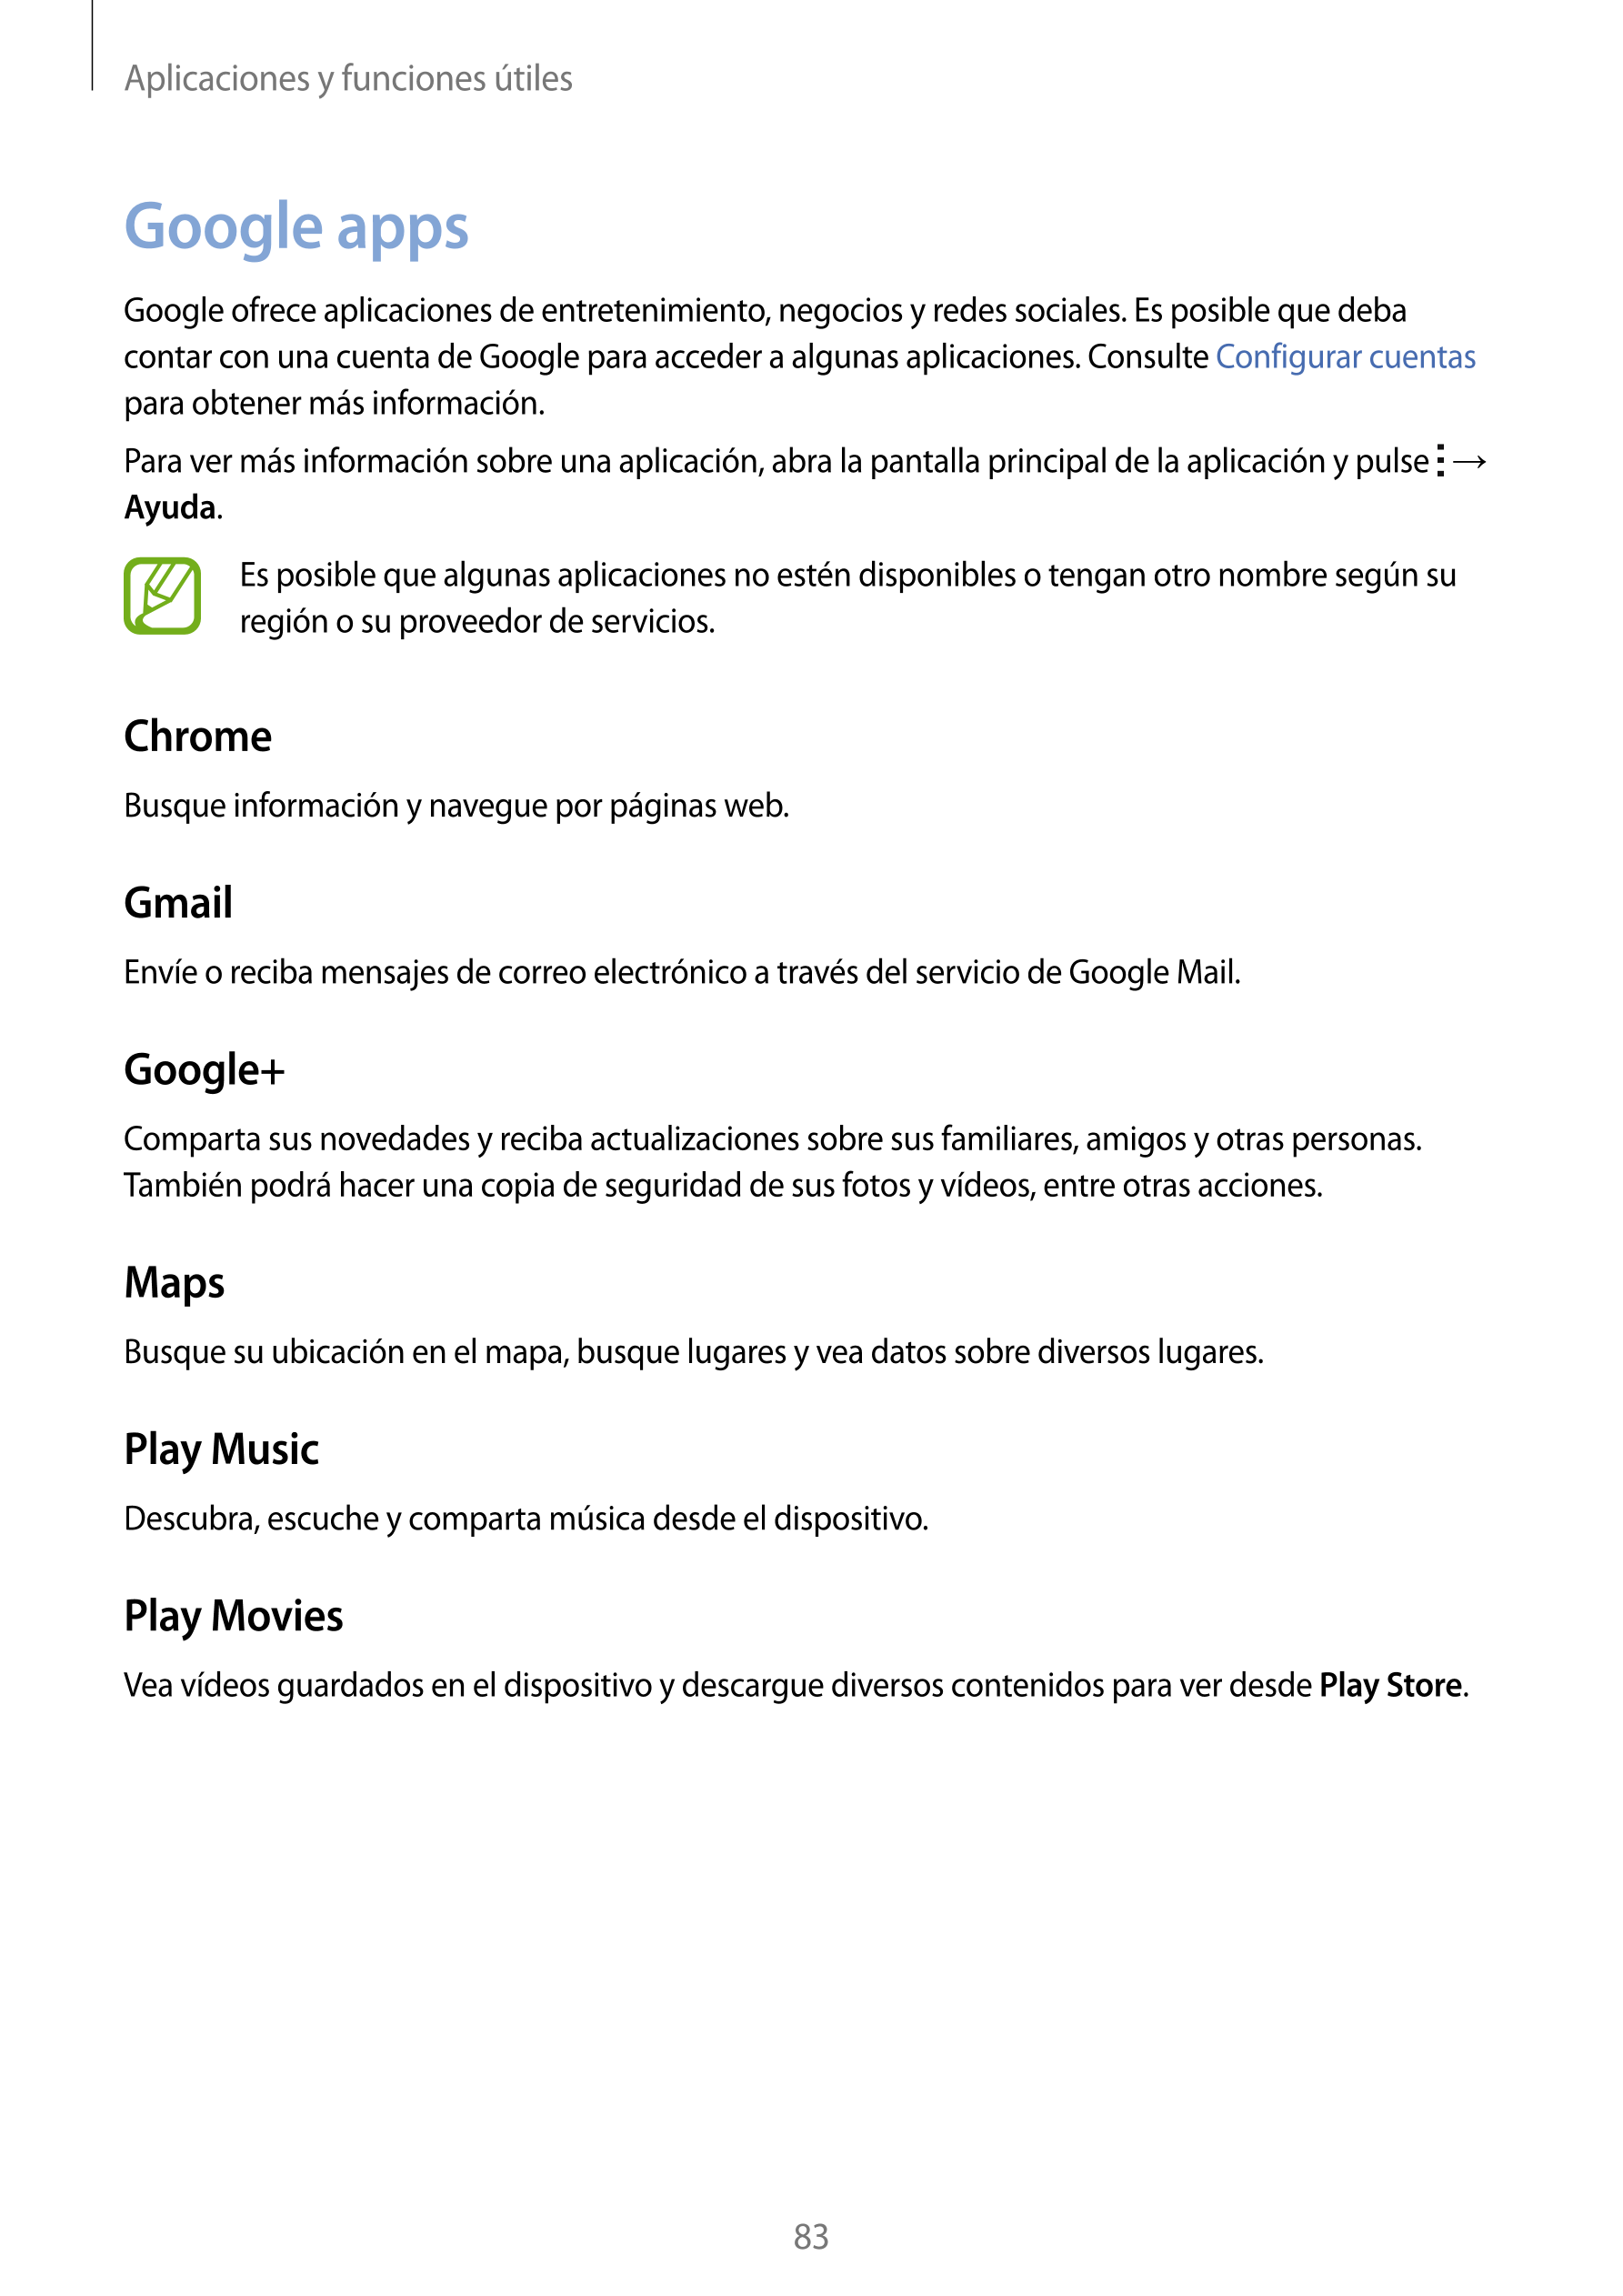 Aplicaciones y funciones útiles
Google apps
Google ofrece aplicaciones de entretenimiento, negocios y redes sociales. Es posible